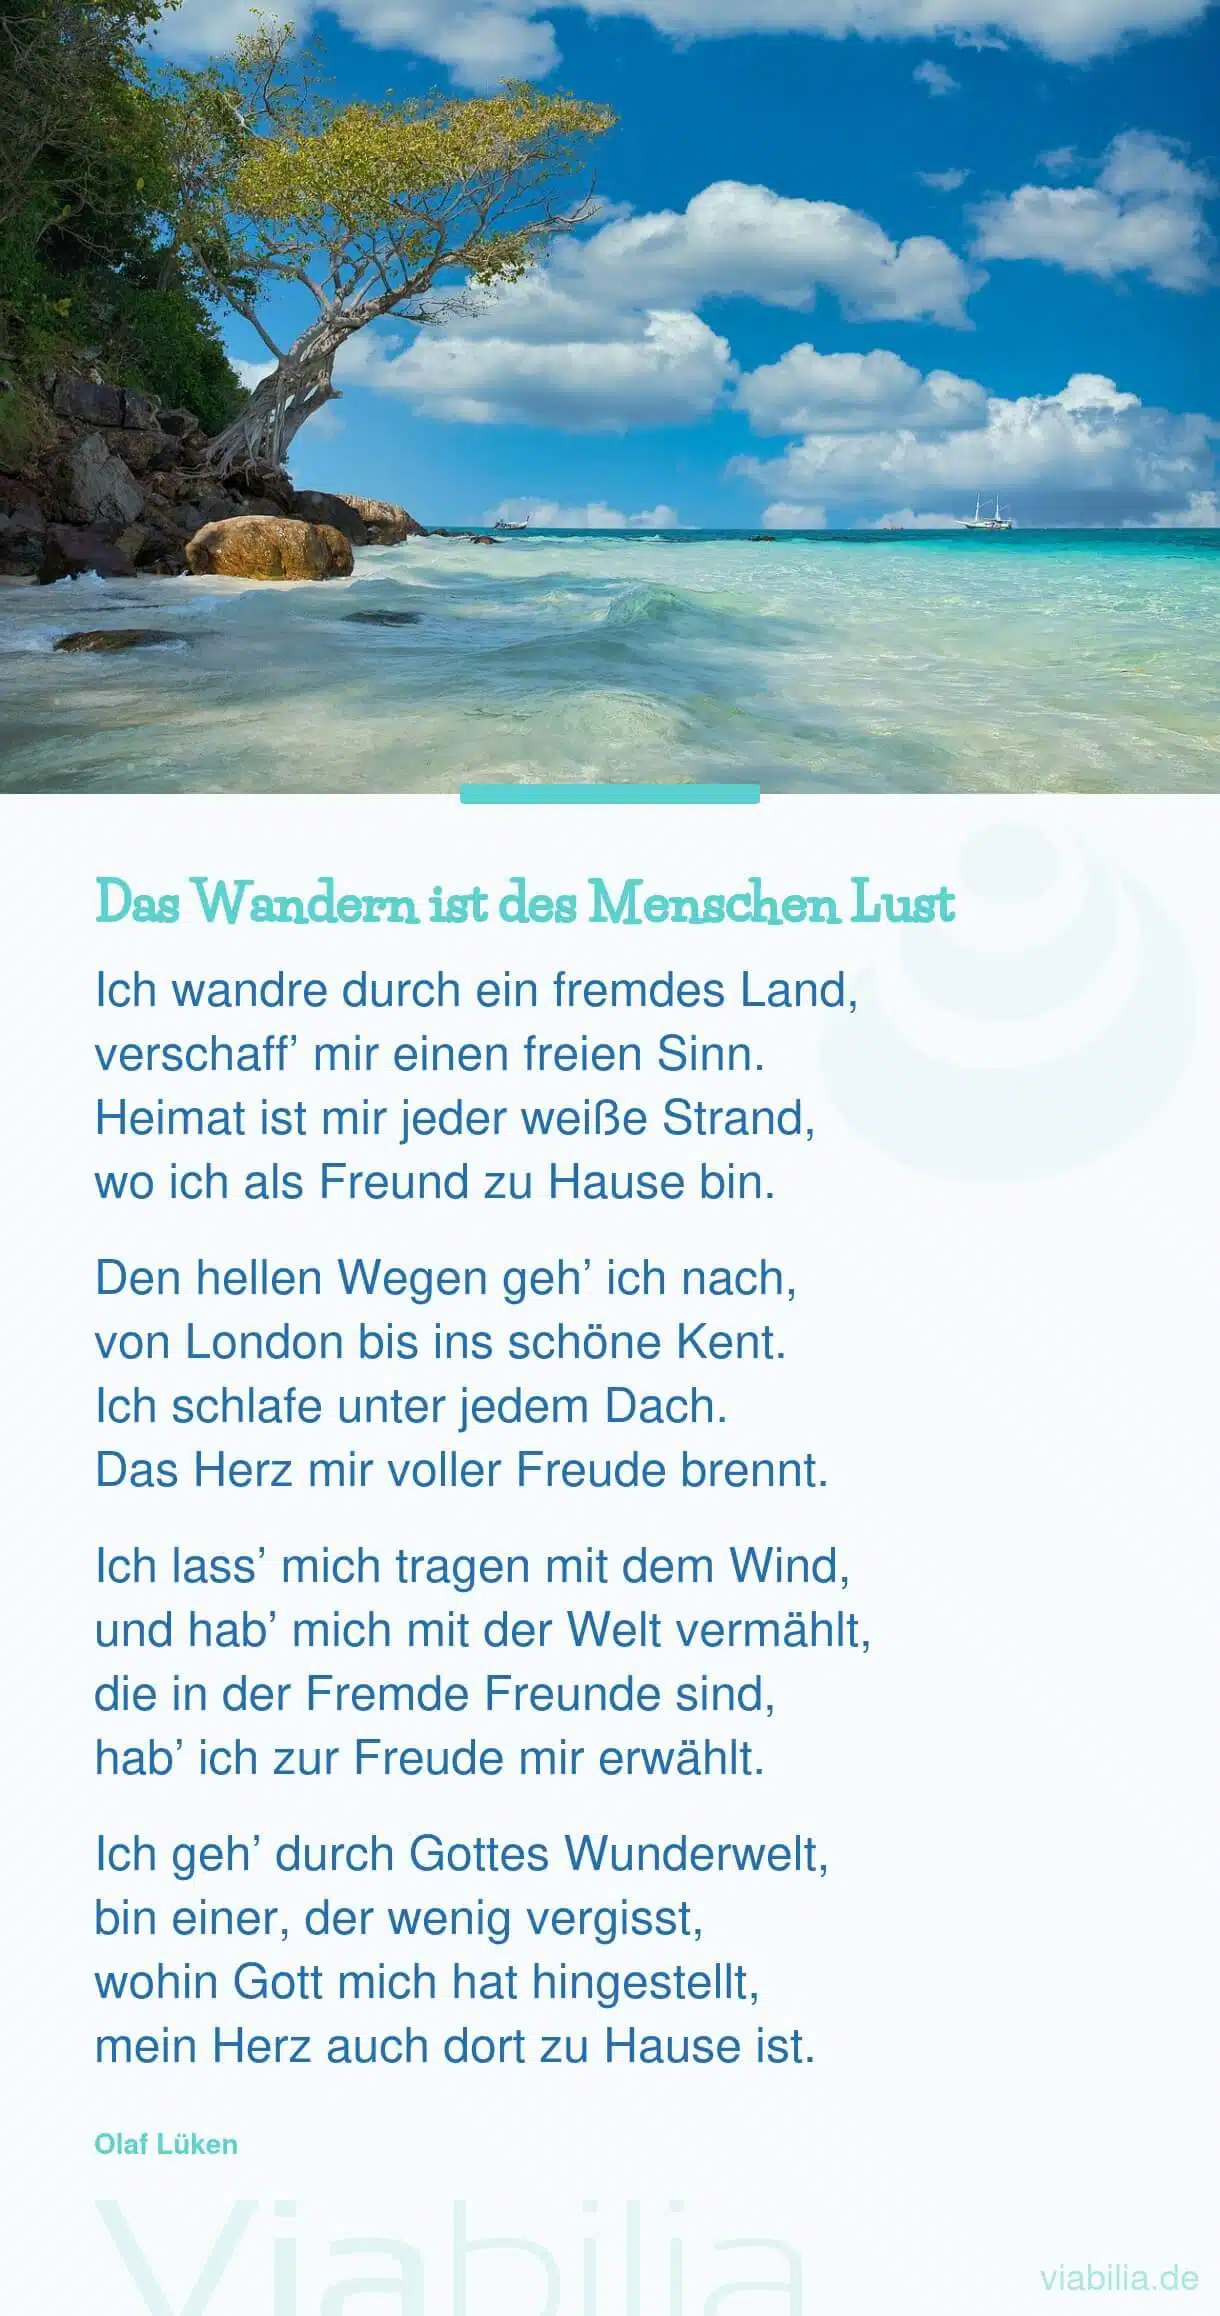 Gedicht von Olaf Lüken über das Wandern